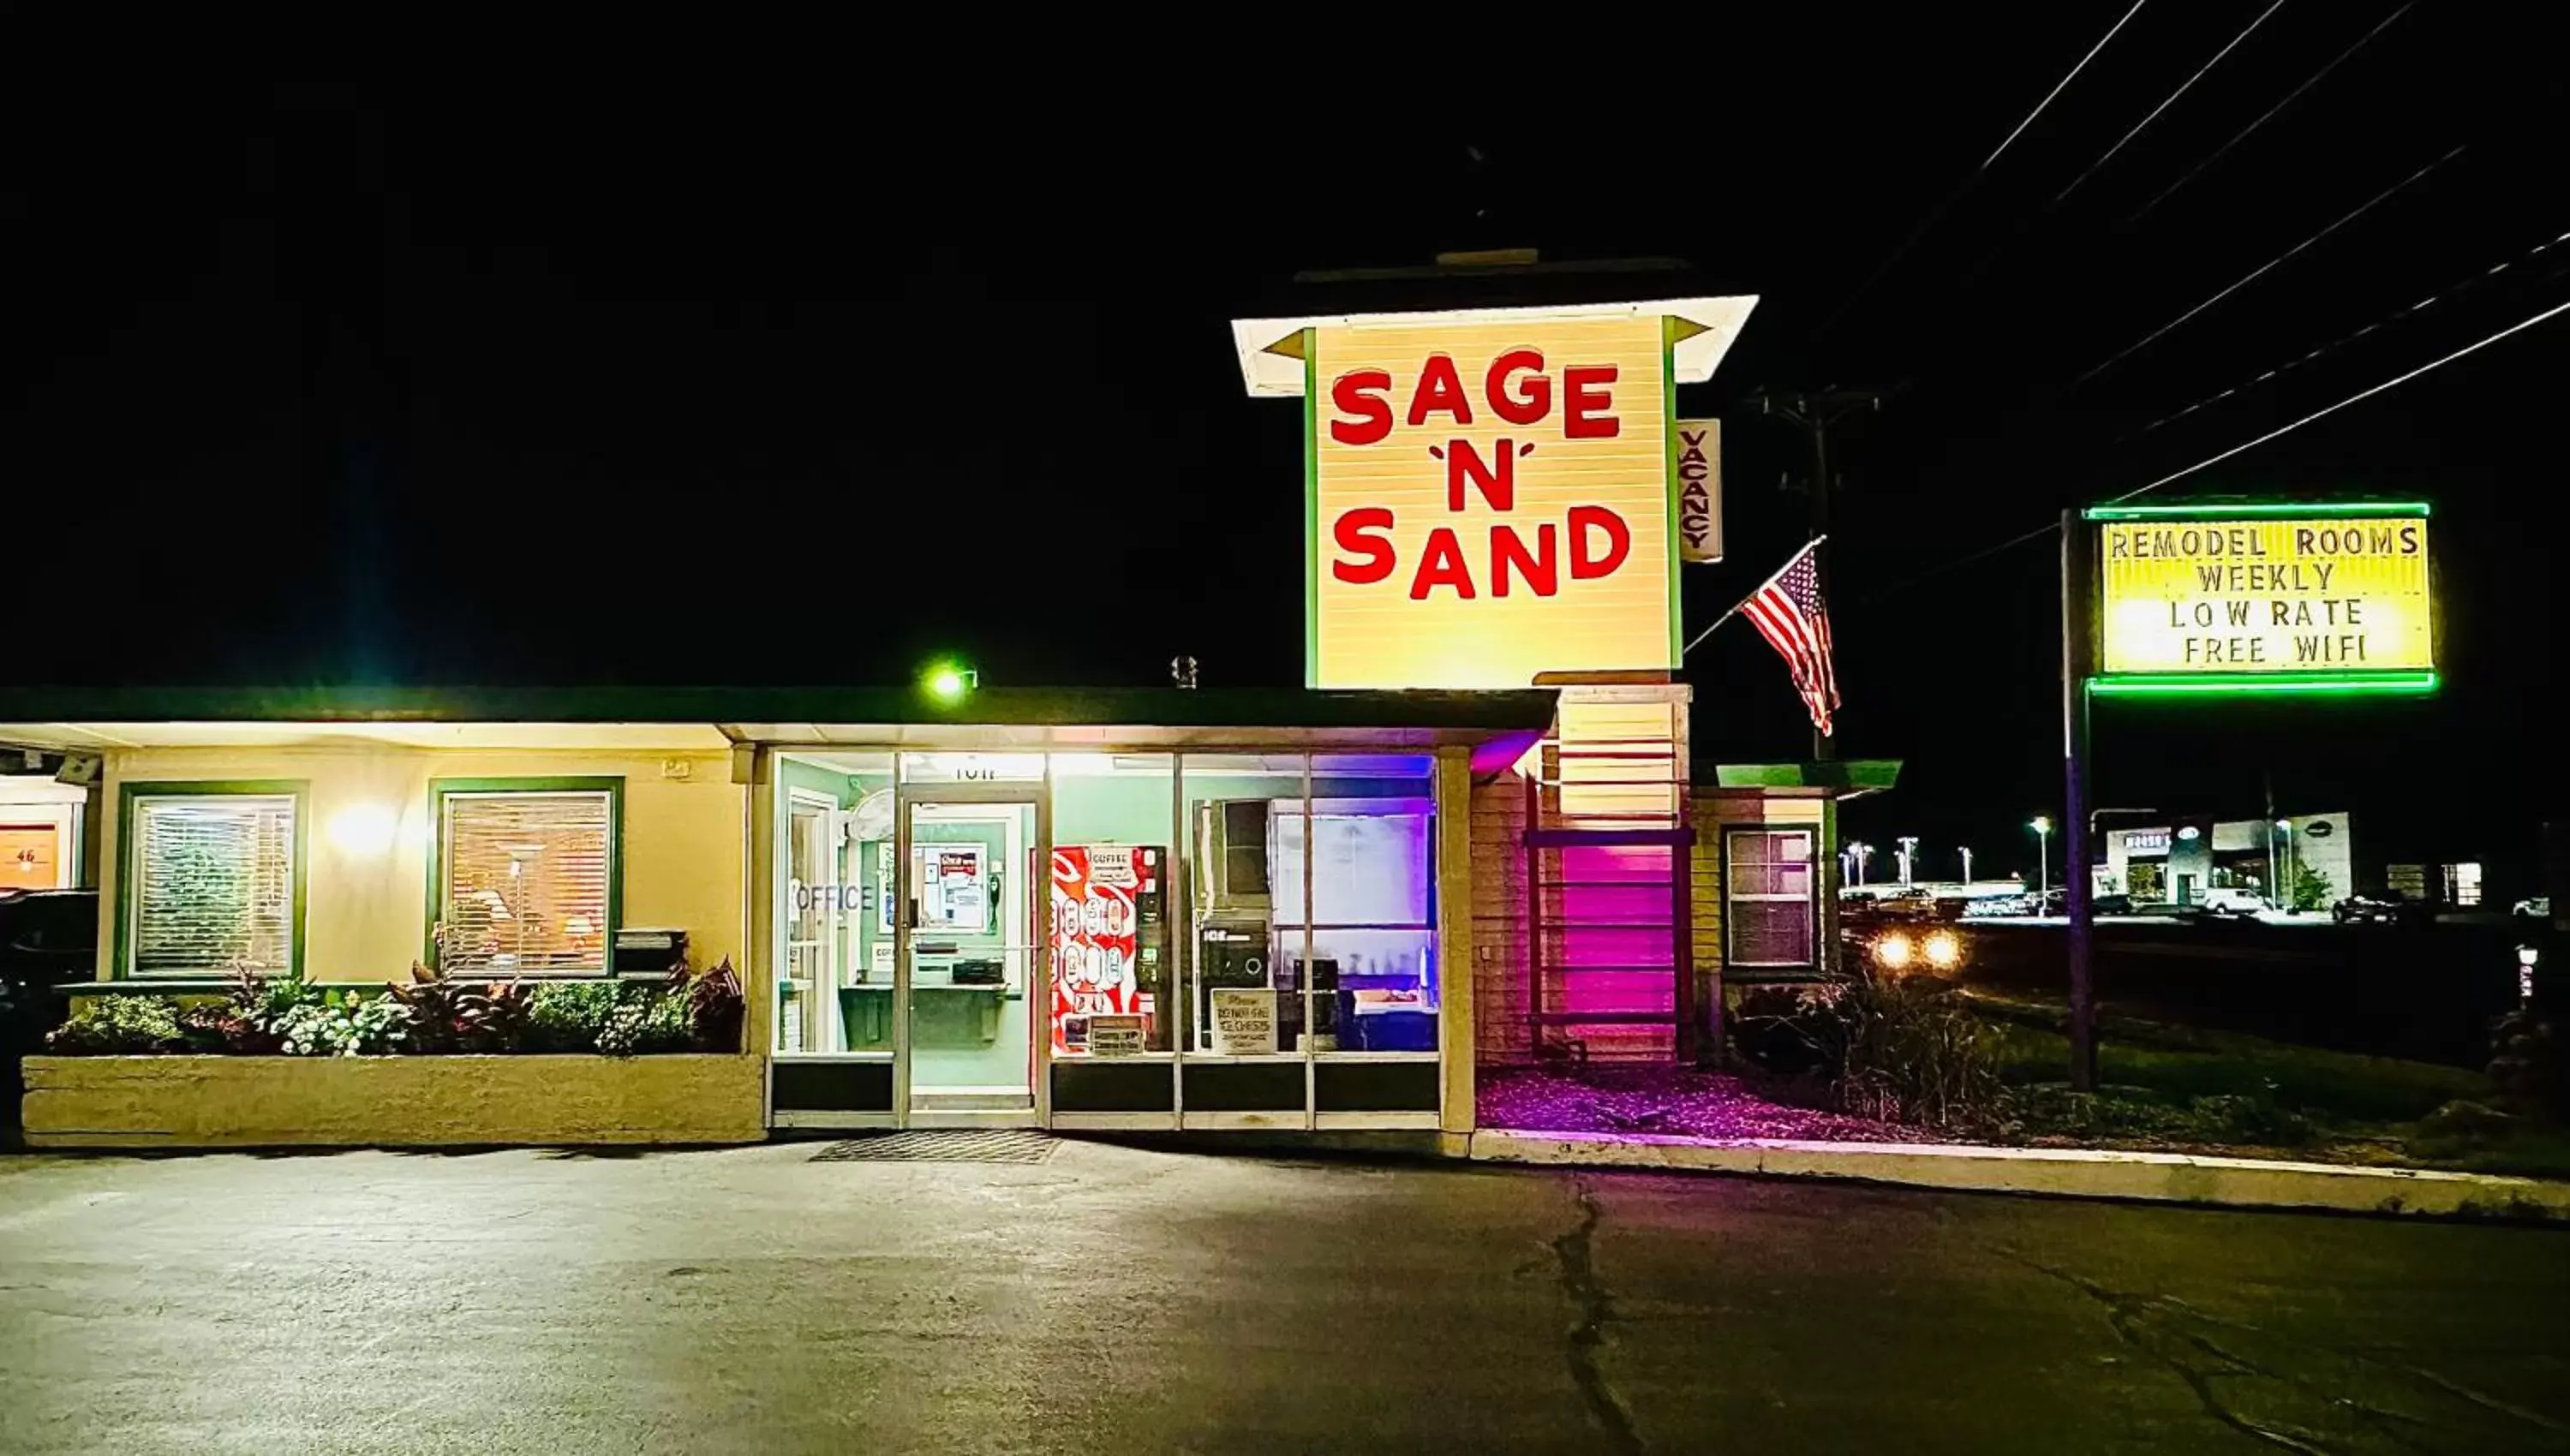 Lobby or reception in Sage N Sand Motel